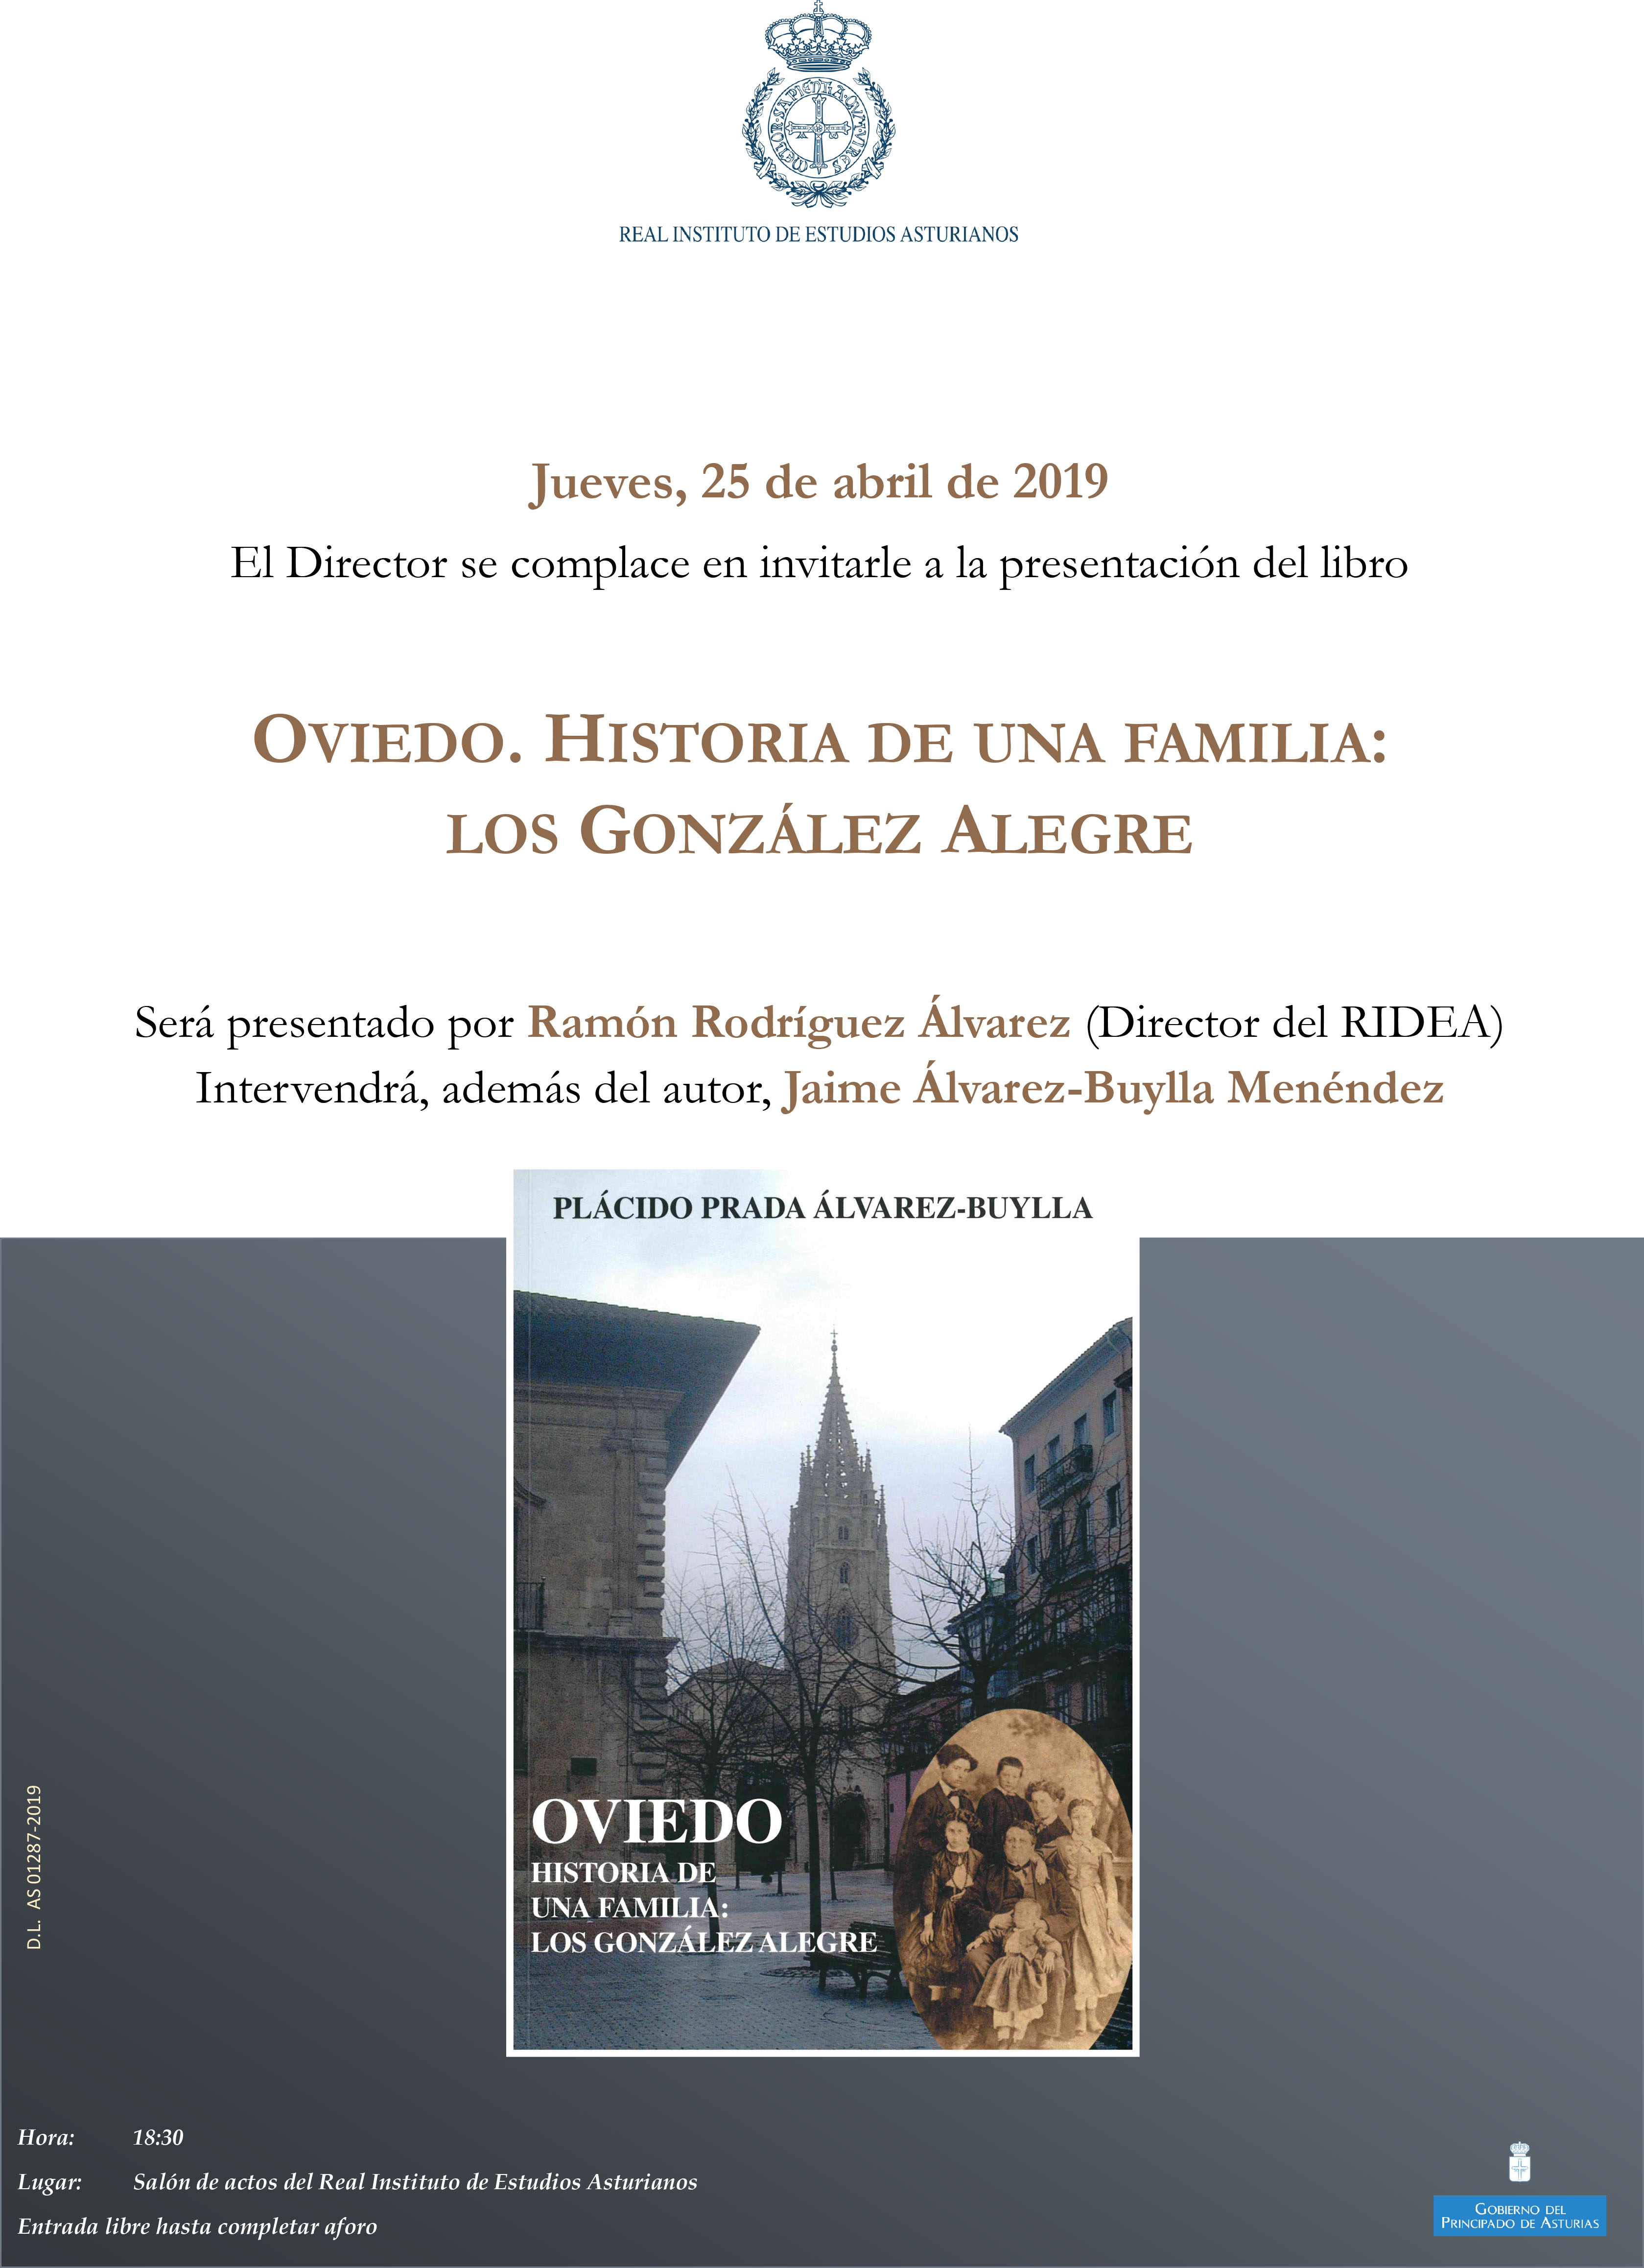 Imagen - Presentación del libro OVIEDO. HISTORIA DE UNA FAMILIA: LOS GONZÁLEZ ALEGRE